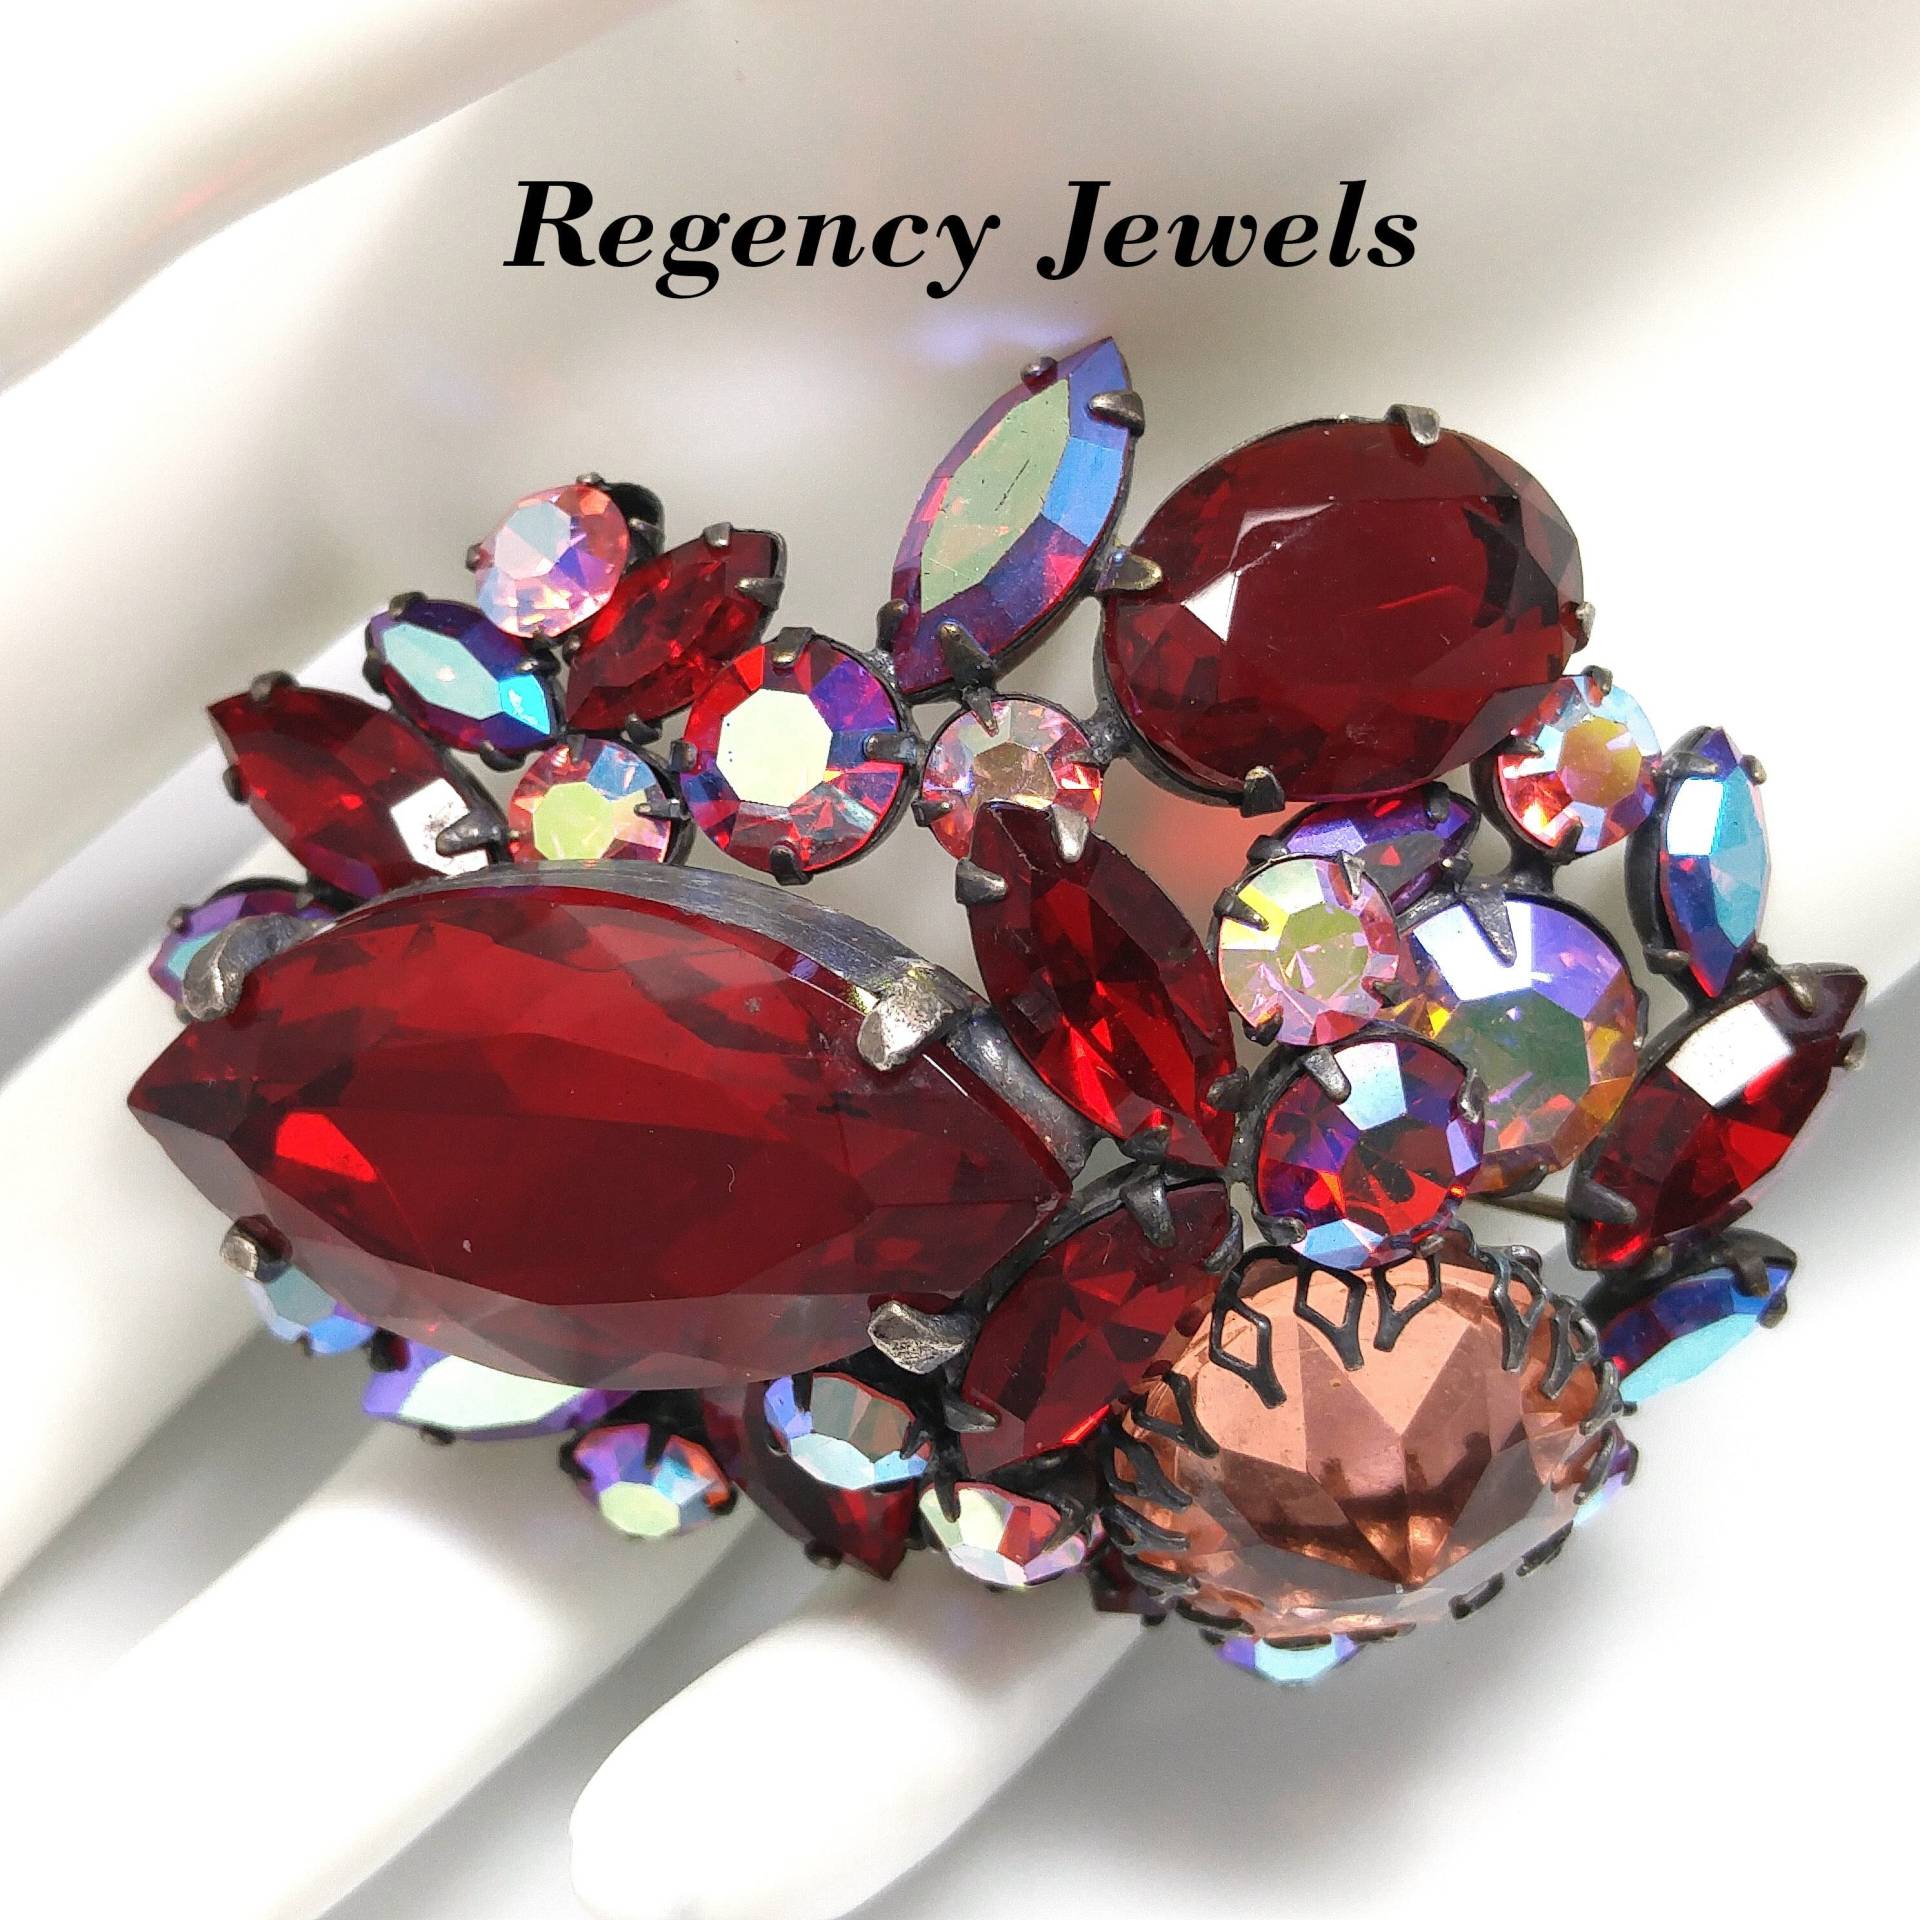 Regency Jewels Rote Brosche, Aurora Borealis, 1950Er Jahre Vintage Schmuck von UncoveringVintage